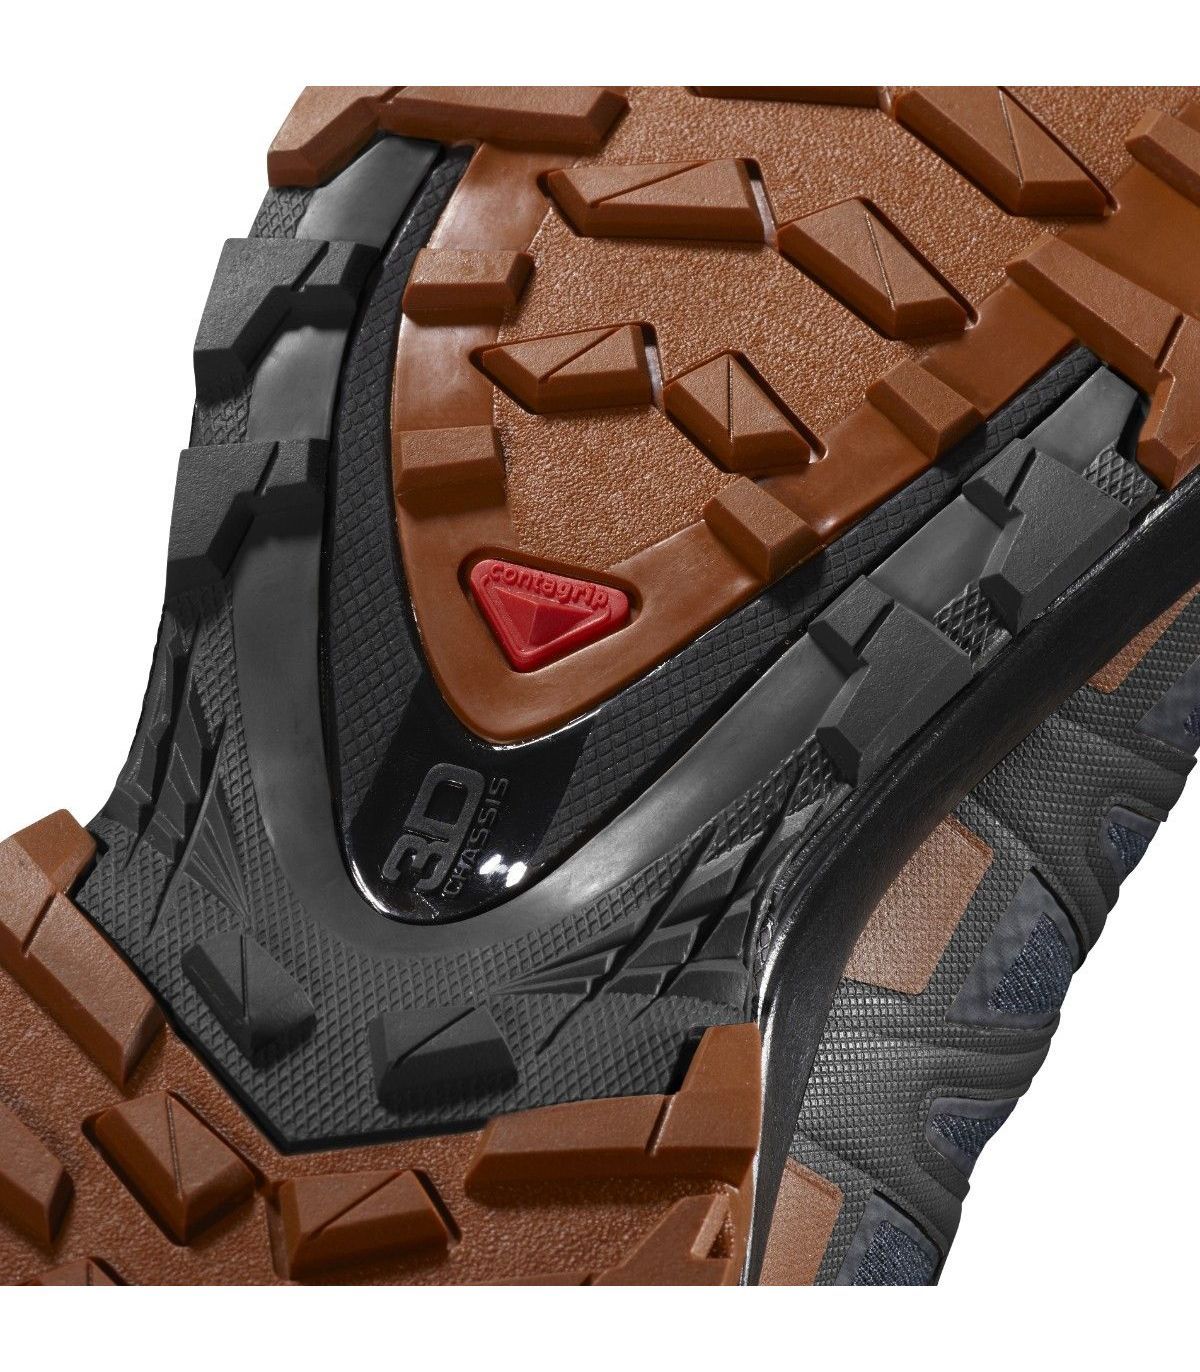 Zapatillas Salomon Xa Pro 3D V8 GTX Fall Leaf. Oferta y Comprar